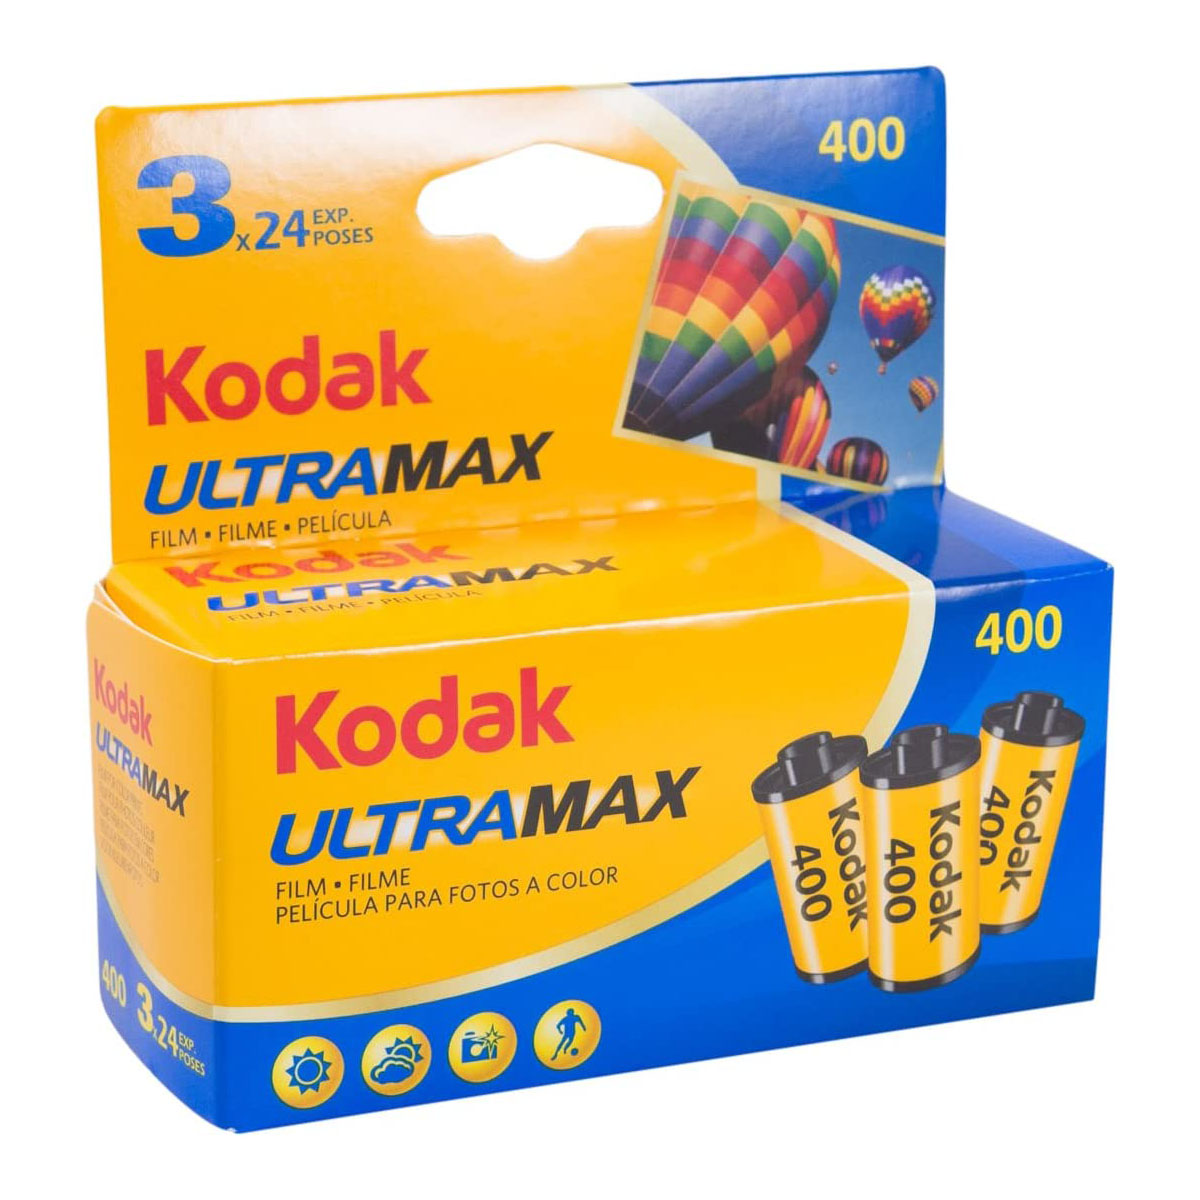 1x3 Kodak Ultra max   400 135/24 ***